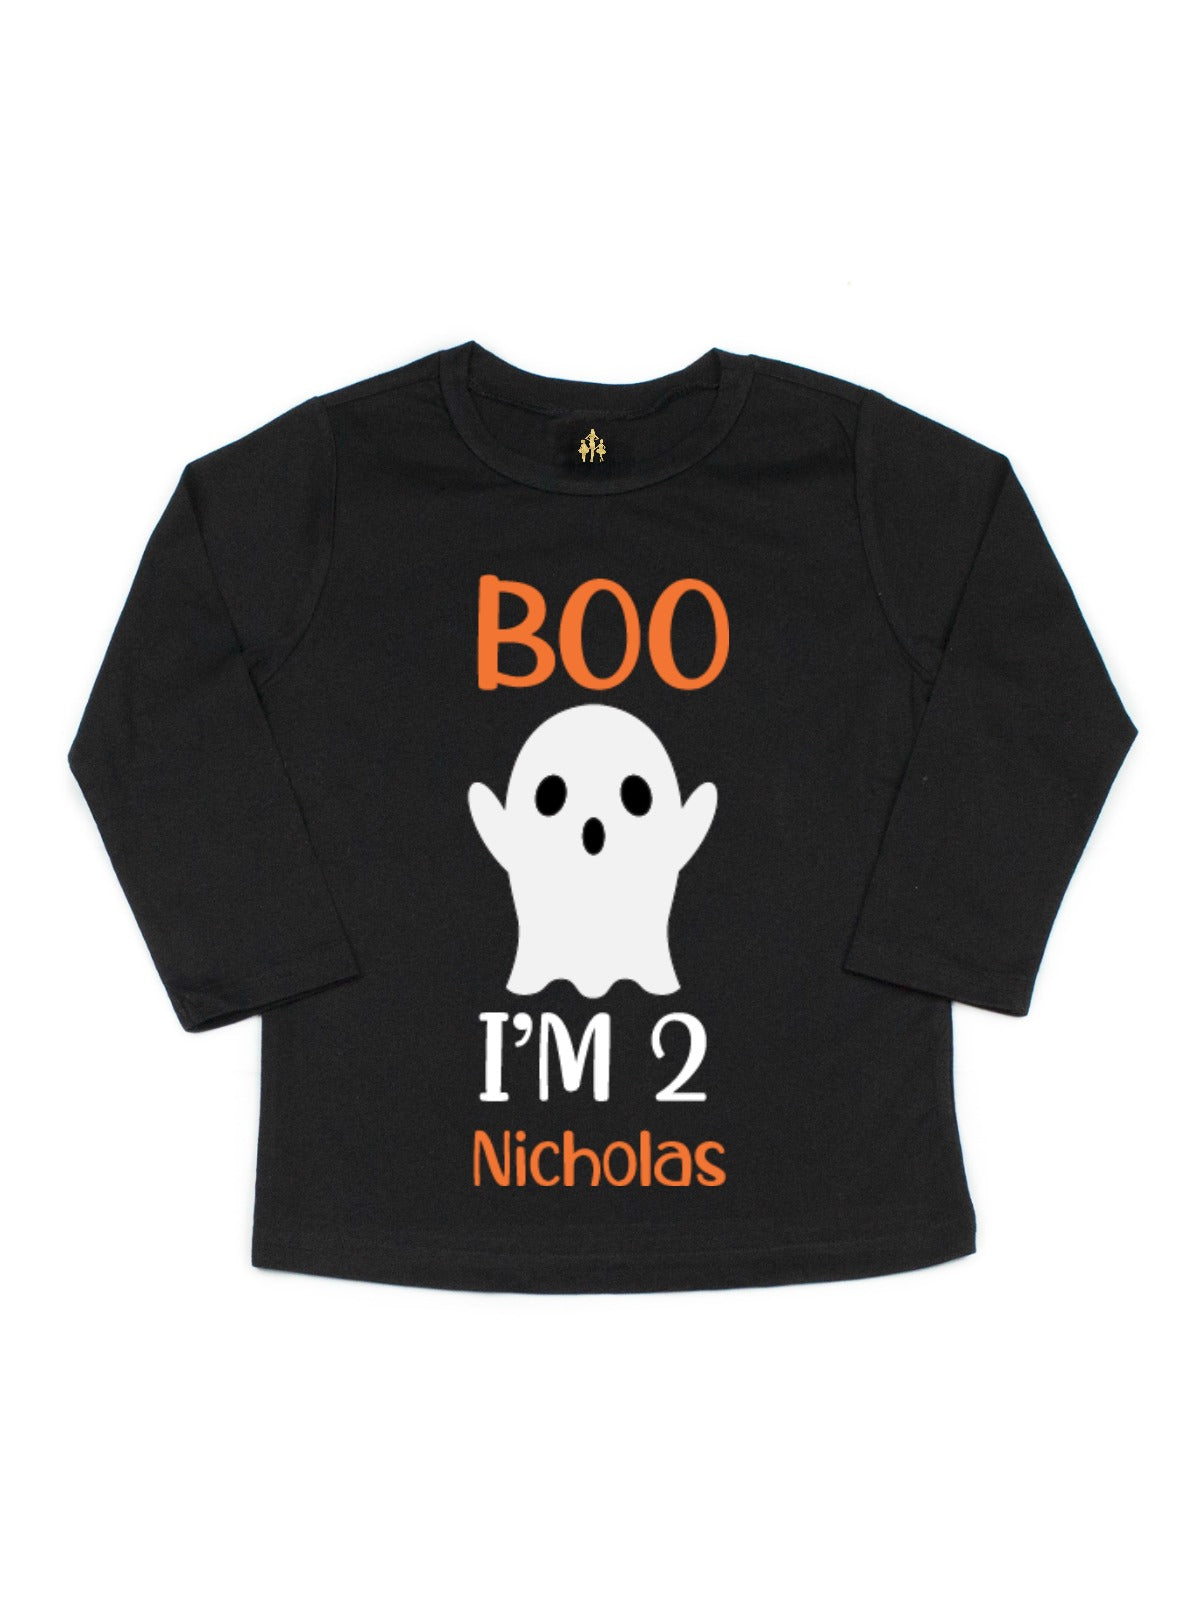 Boo halloween tshirt